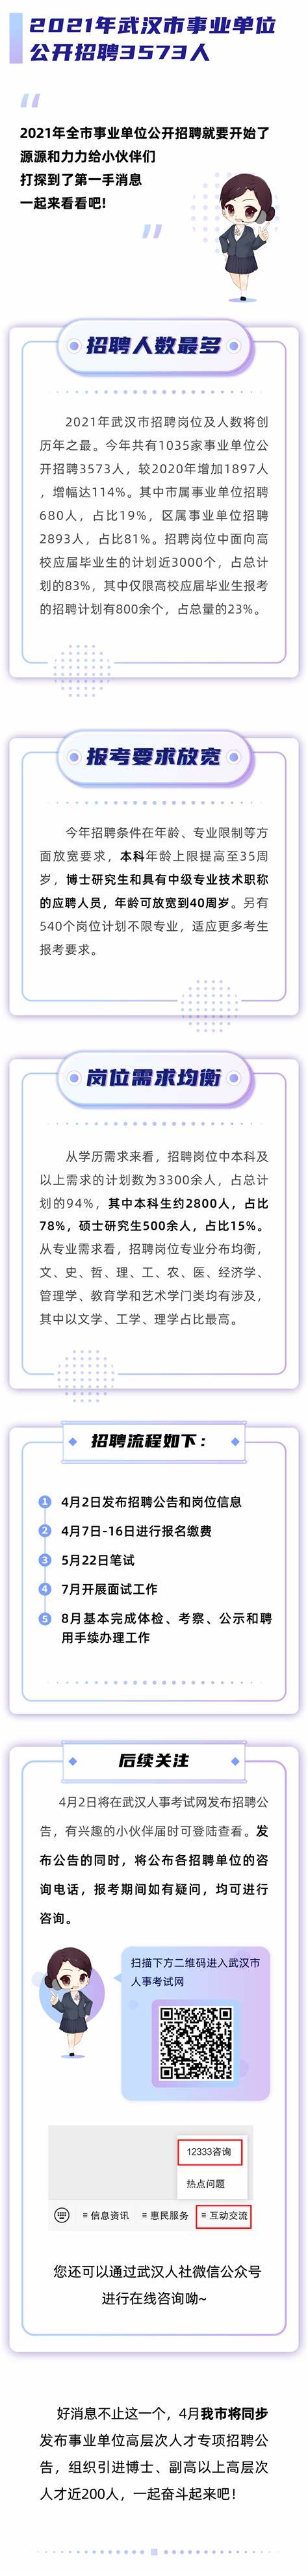 上海招聘会2021时间表地址